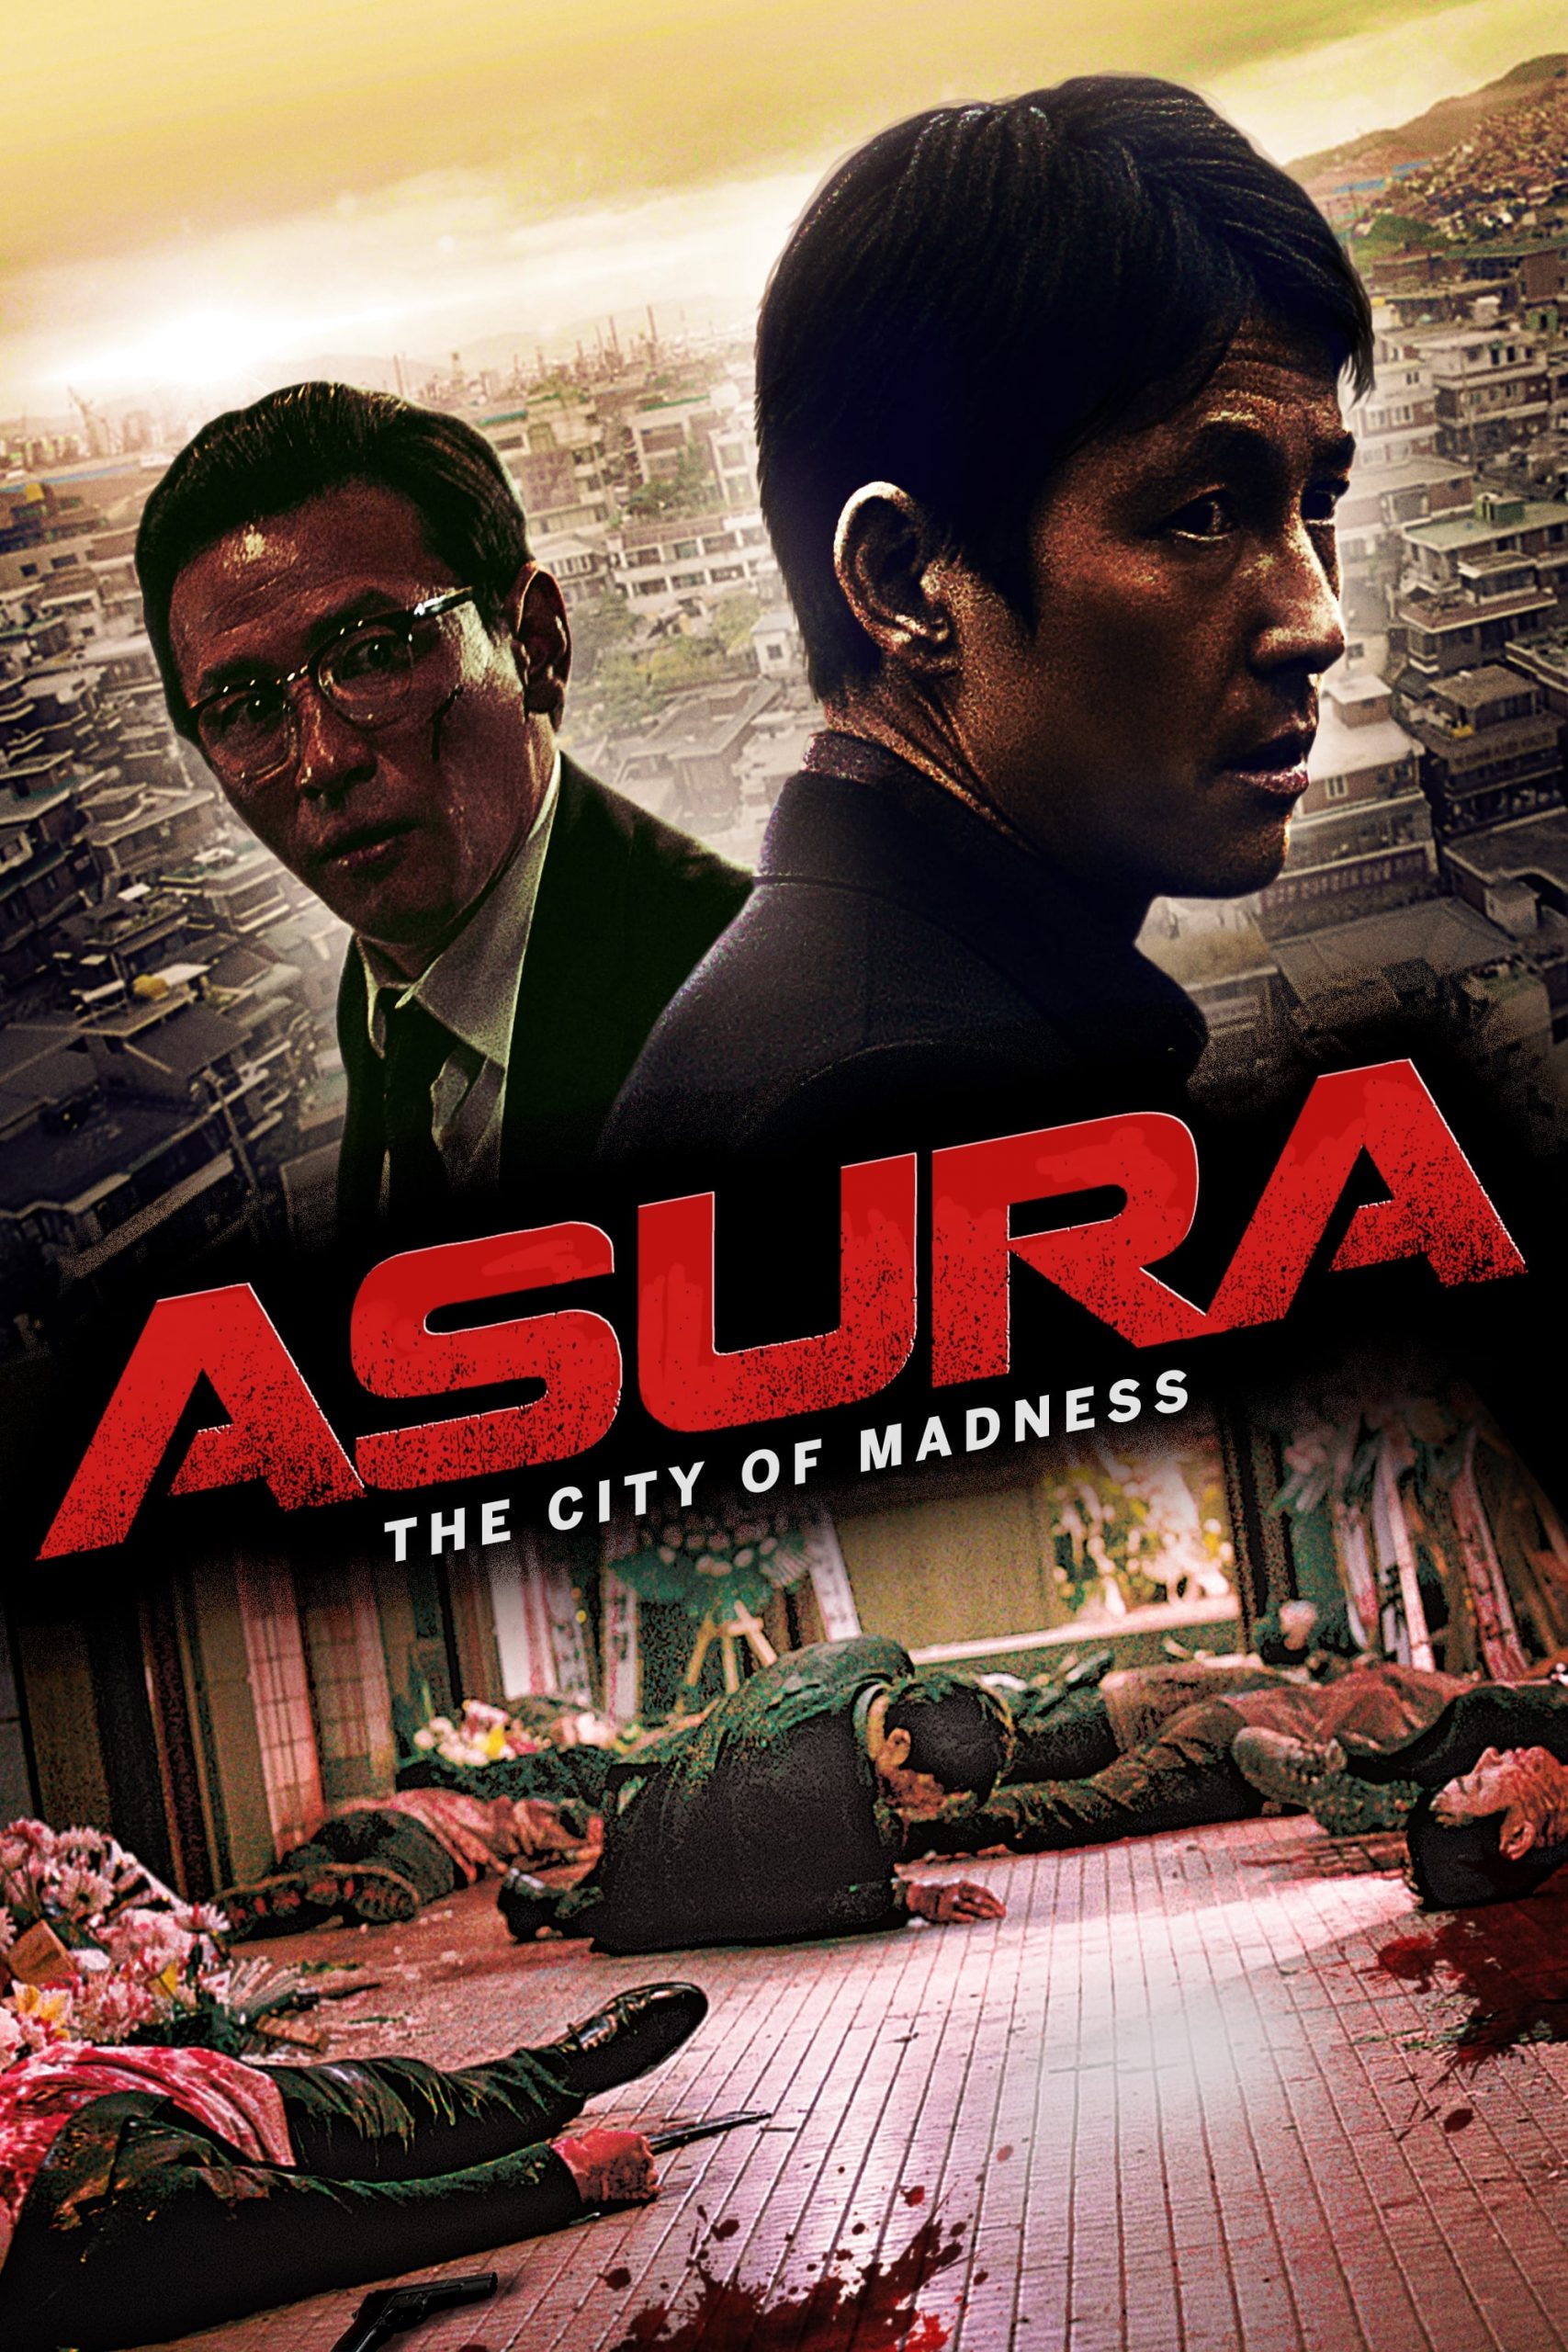 ดูหนังออนไลน์ฟรี Asura The City of Madness (2016) เมืองคนชั่ว หนังเต็มเรื่อง หนังมาสเตอร์ ดูหนังHD ดูหนังออนไลน์ ดูหนังใหม่